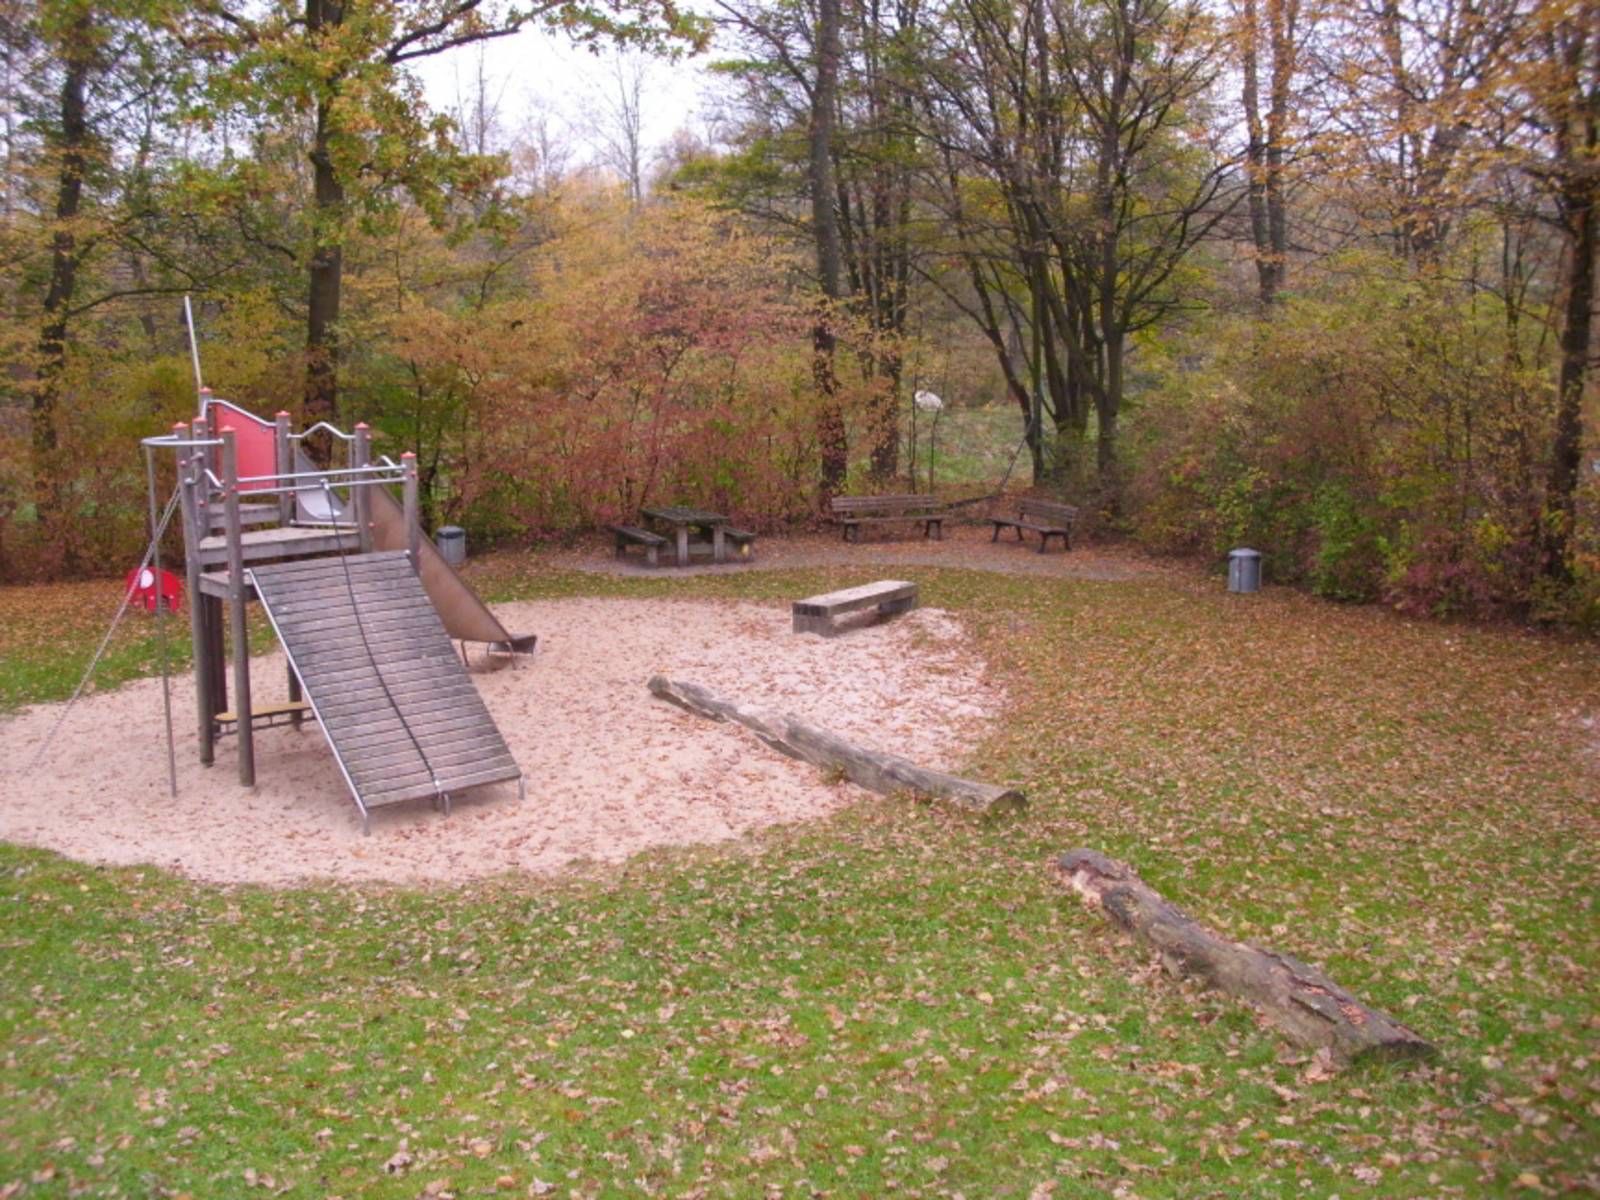 Spielplatz mit Holzrutsche und Sandfläche umrandet von Bäumen und Büschen